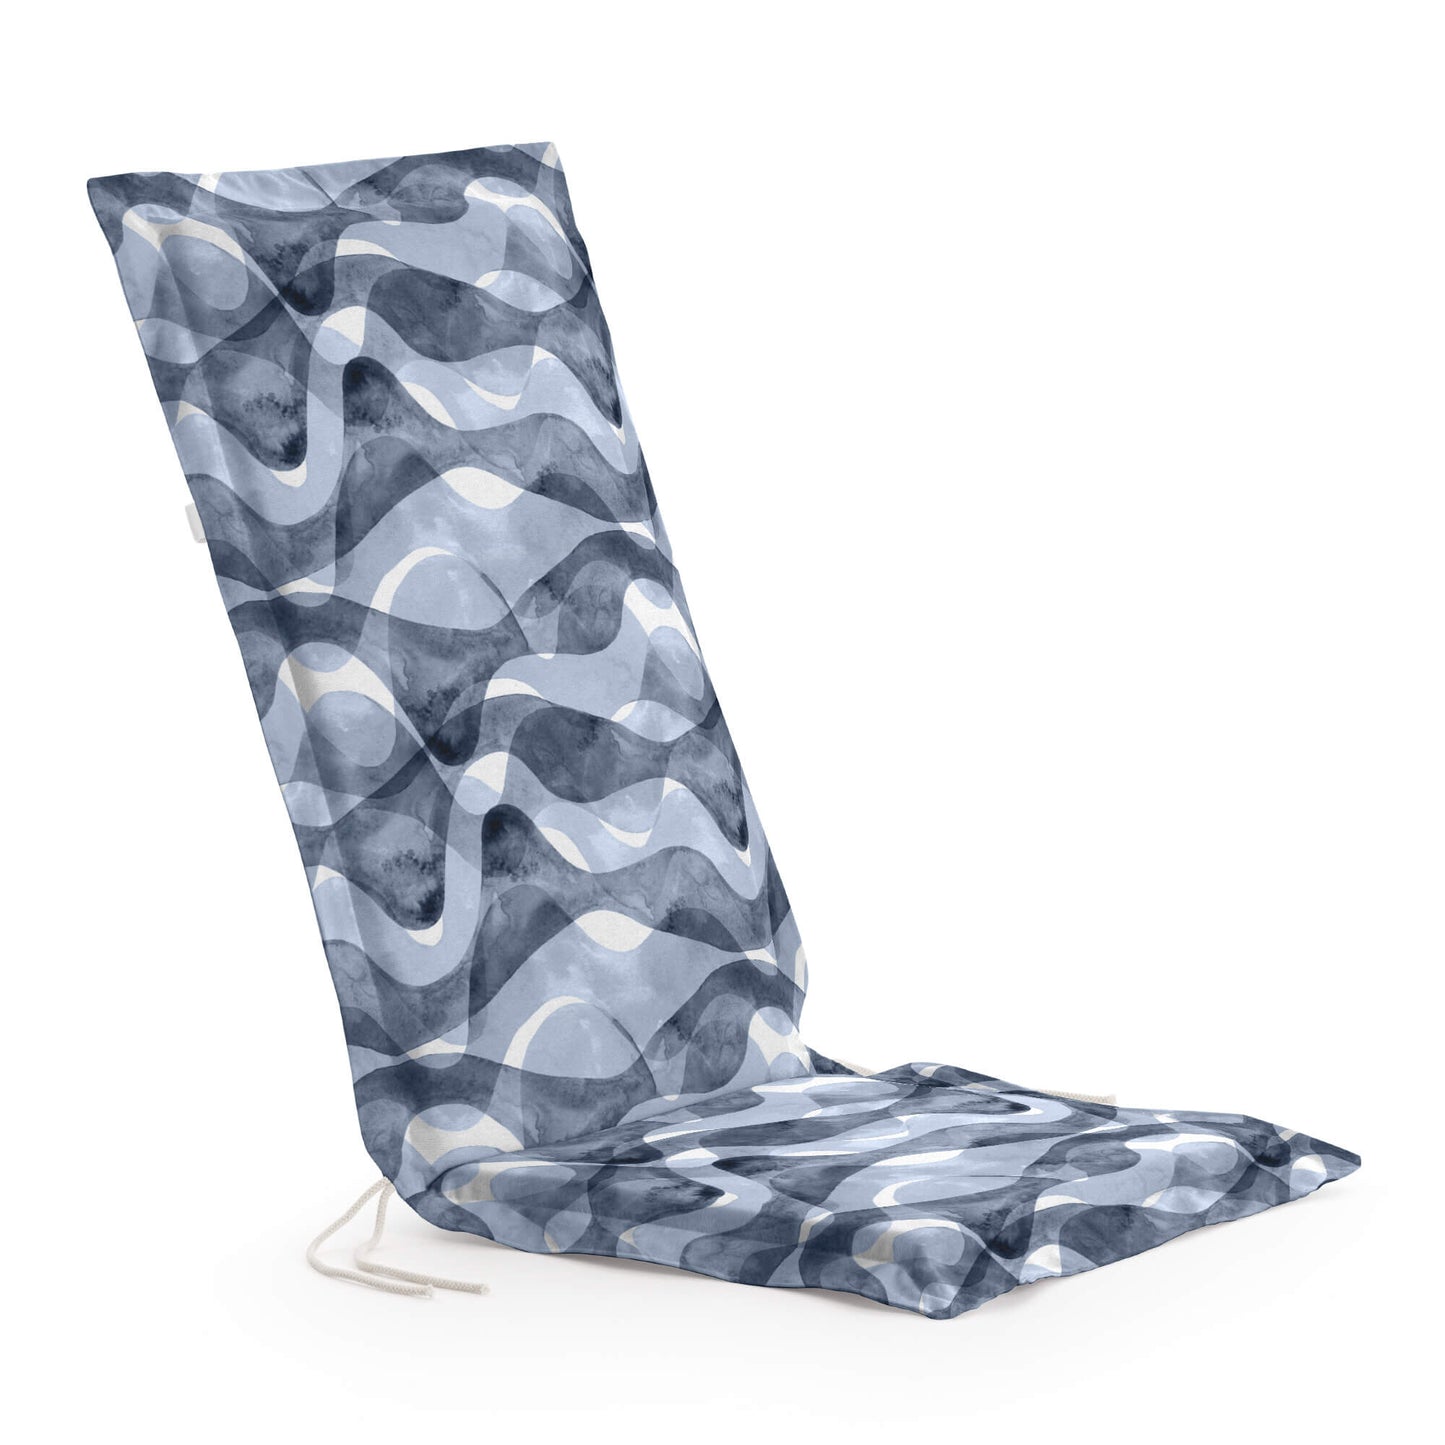 Cushion for garden chair 0120-414 48x100x5 cm